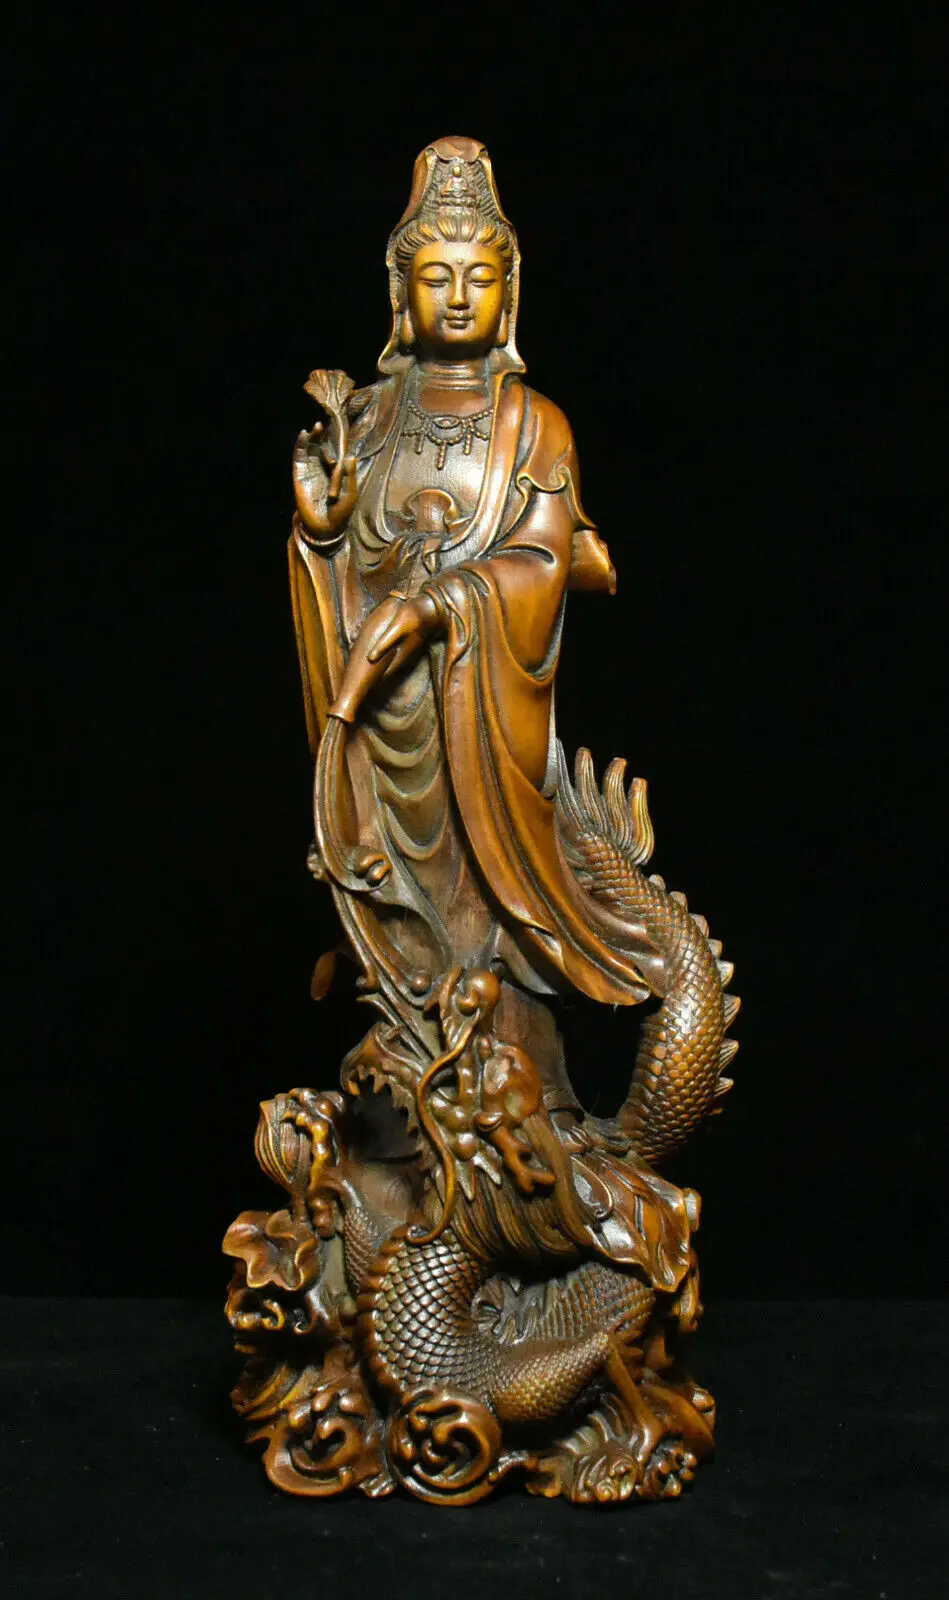 

Old China Boxwood Wood Dragon Kwan-yin Boddhisattva Loong GuanYin Goddess Statue